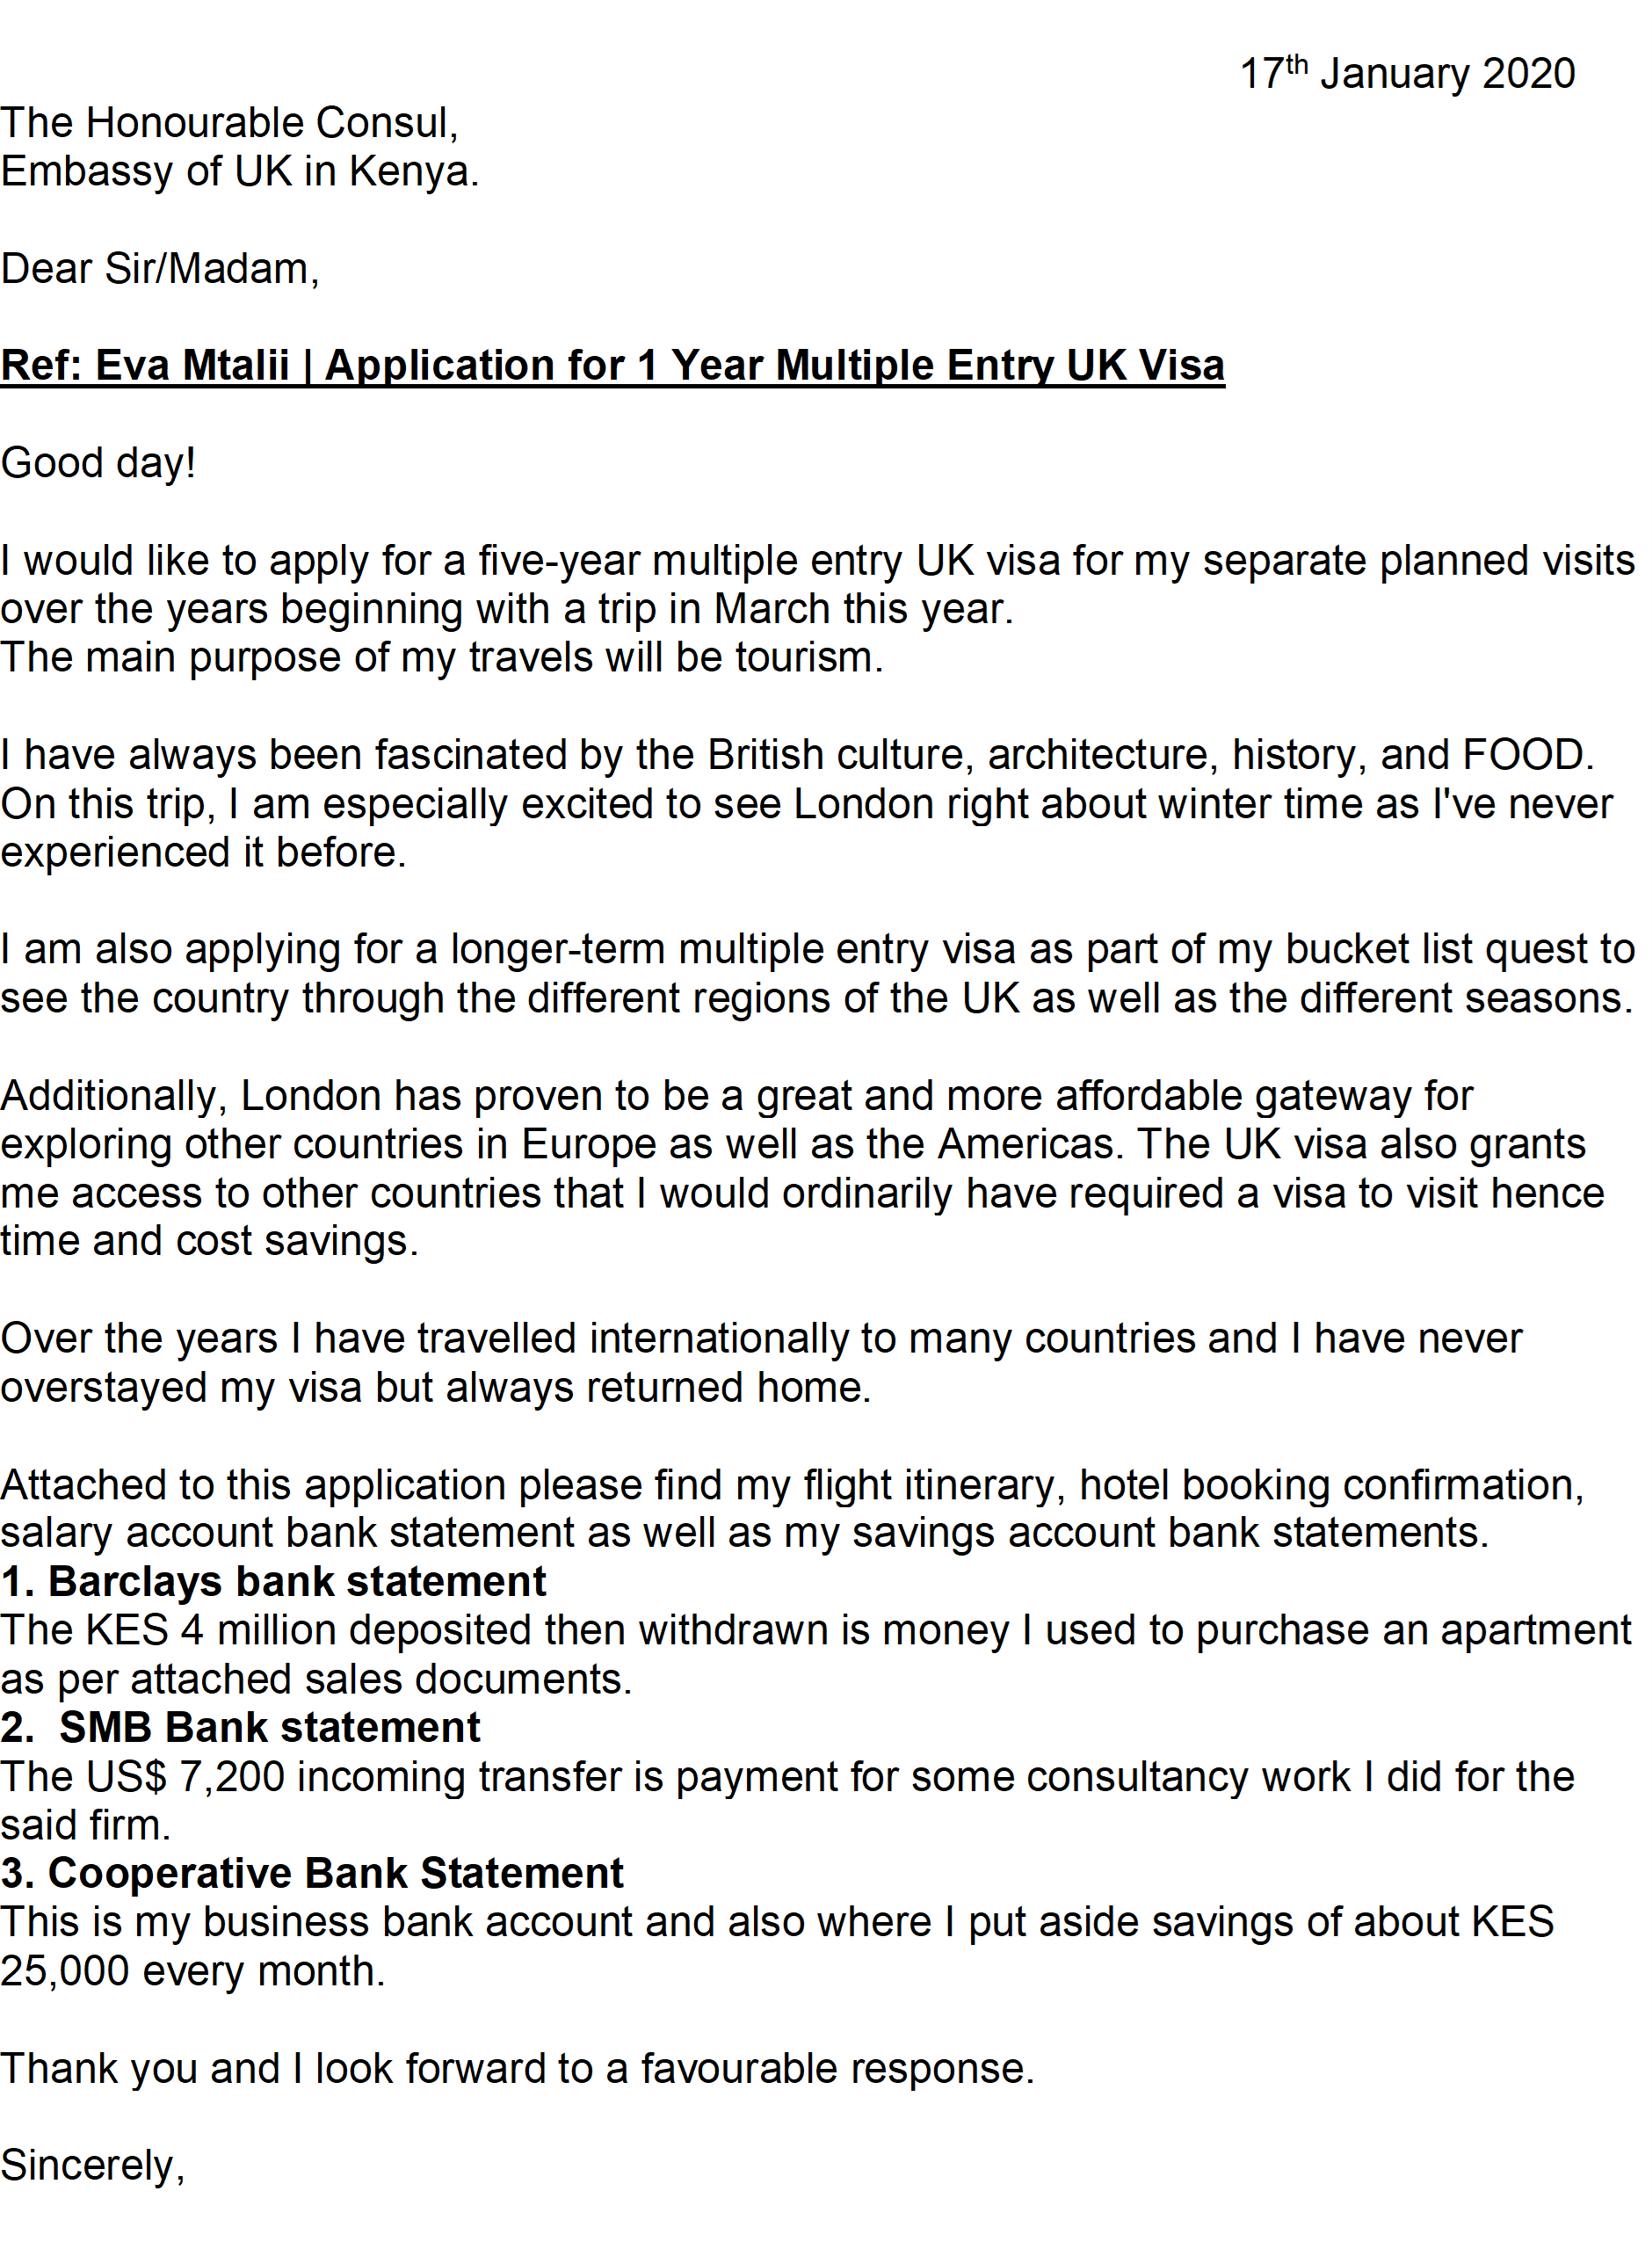 cover letter for visa form